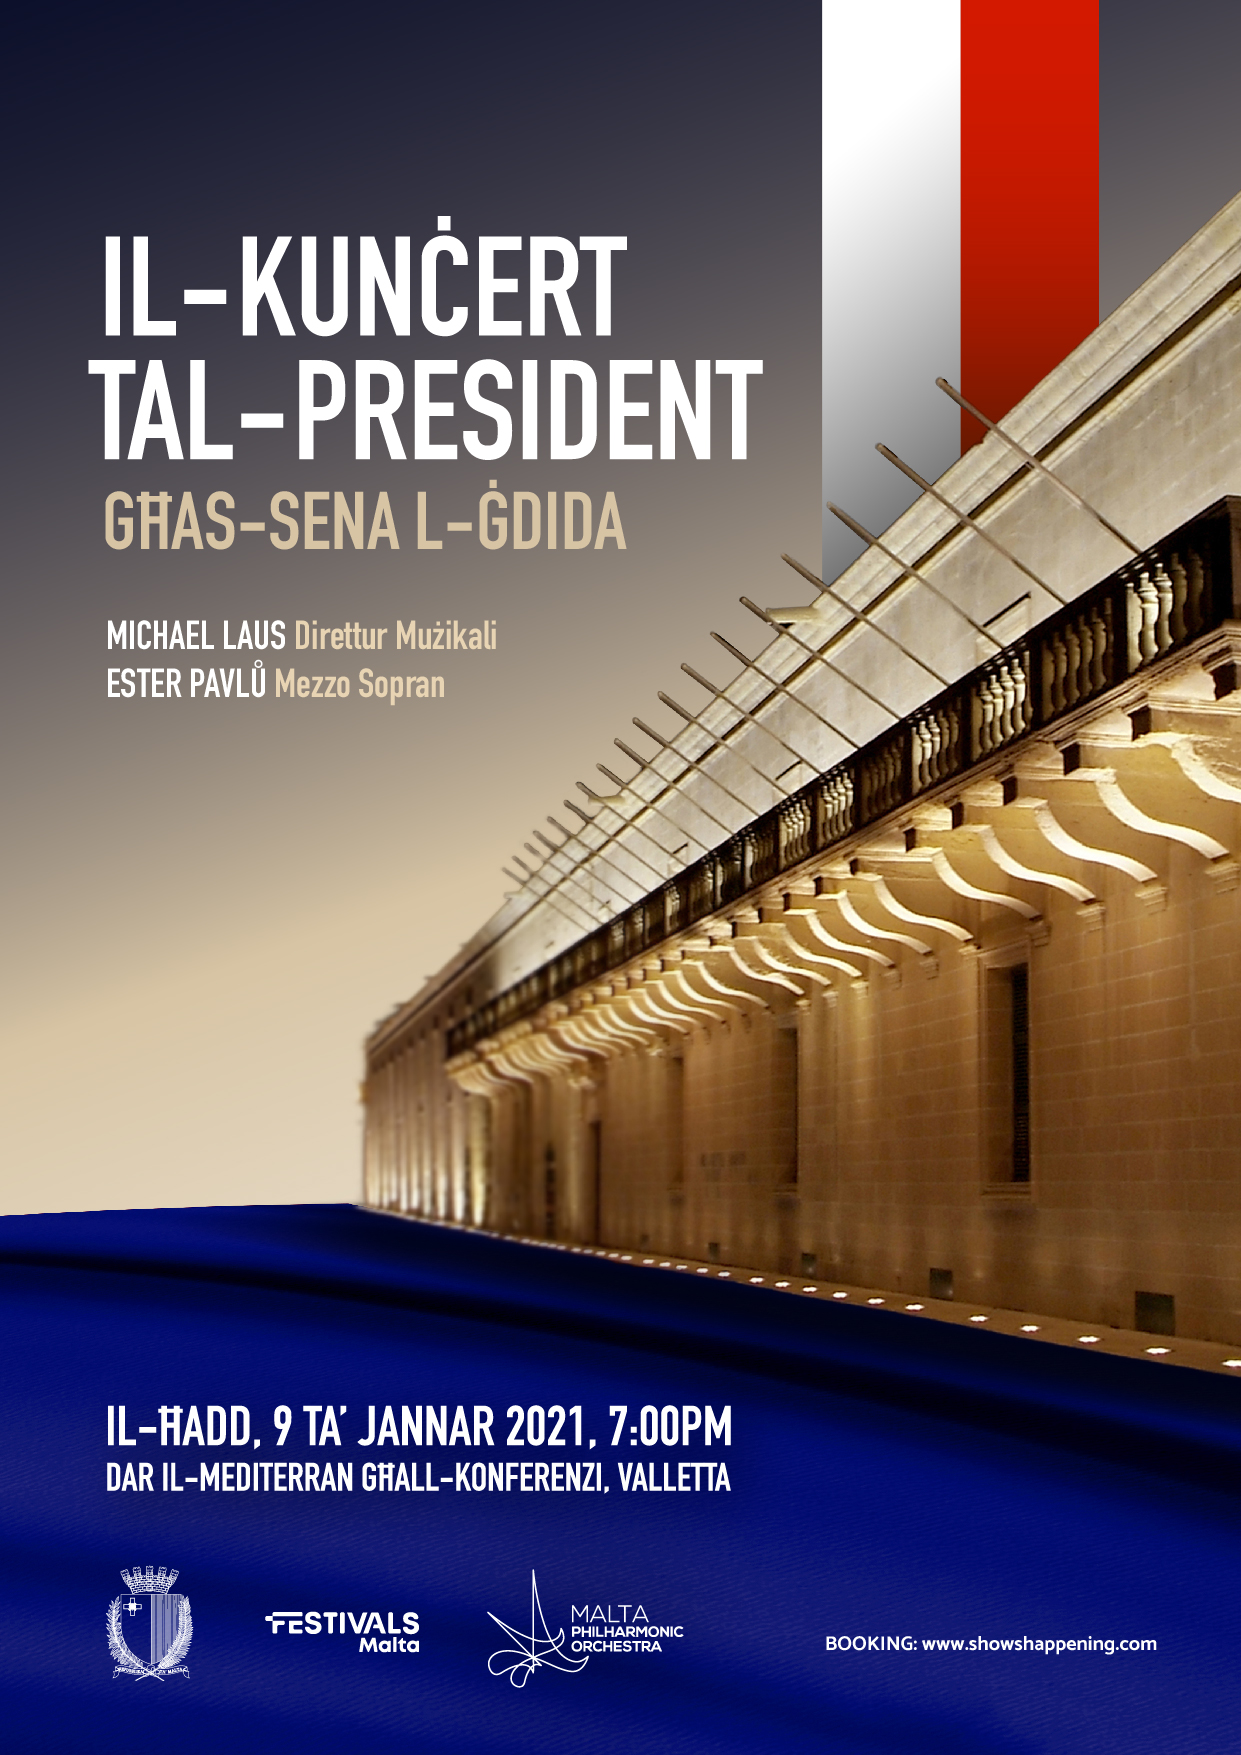 Il-Kunċert tal-President għas-Sena l-Ġdida poster